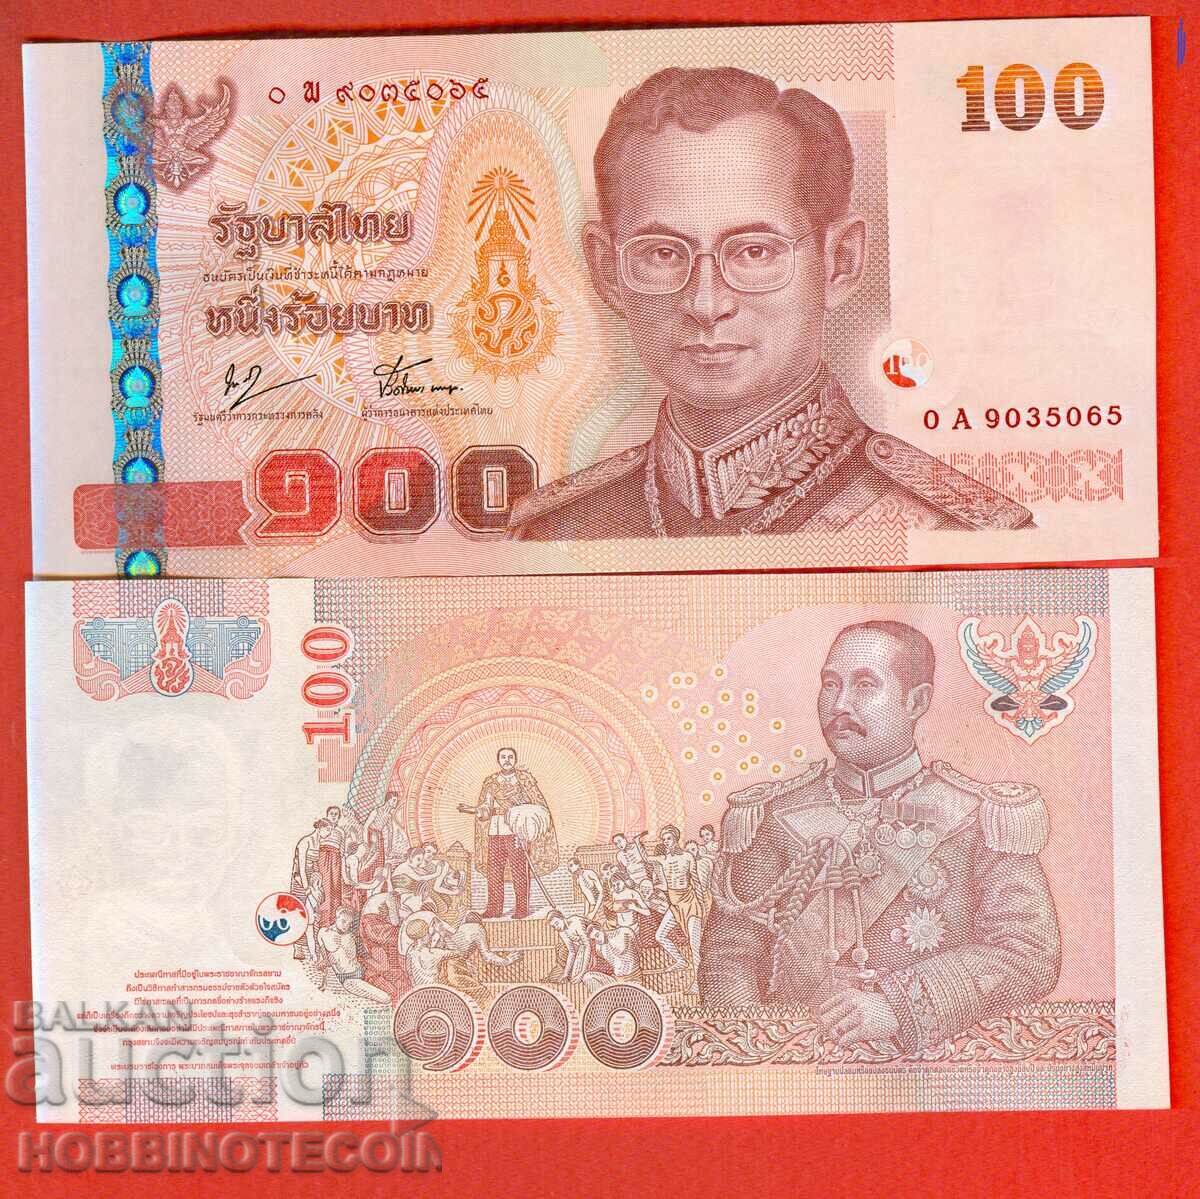 THAILAND 100 BATA ΝΕΟ τεύχος 2005 - under 76 NEW UNC